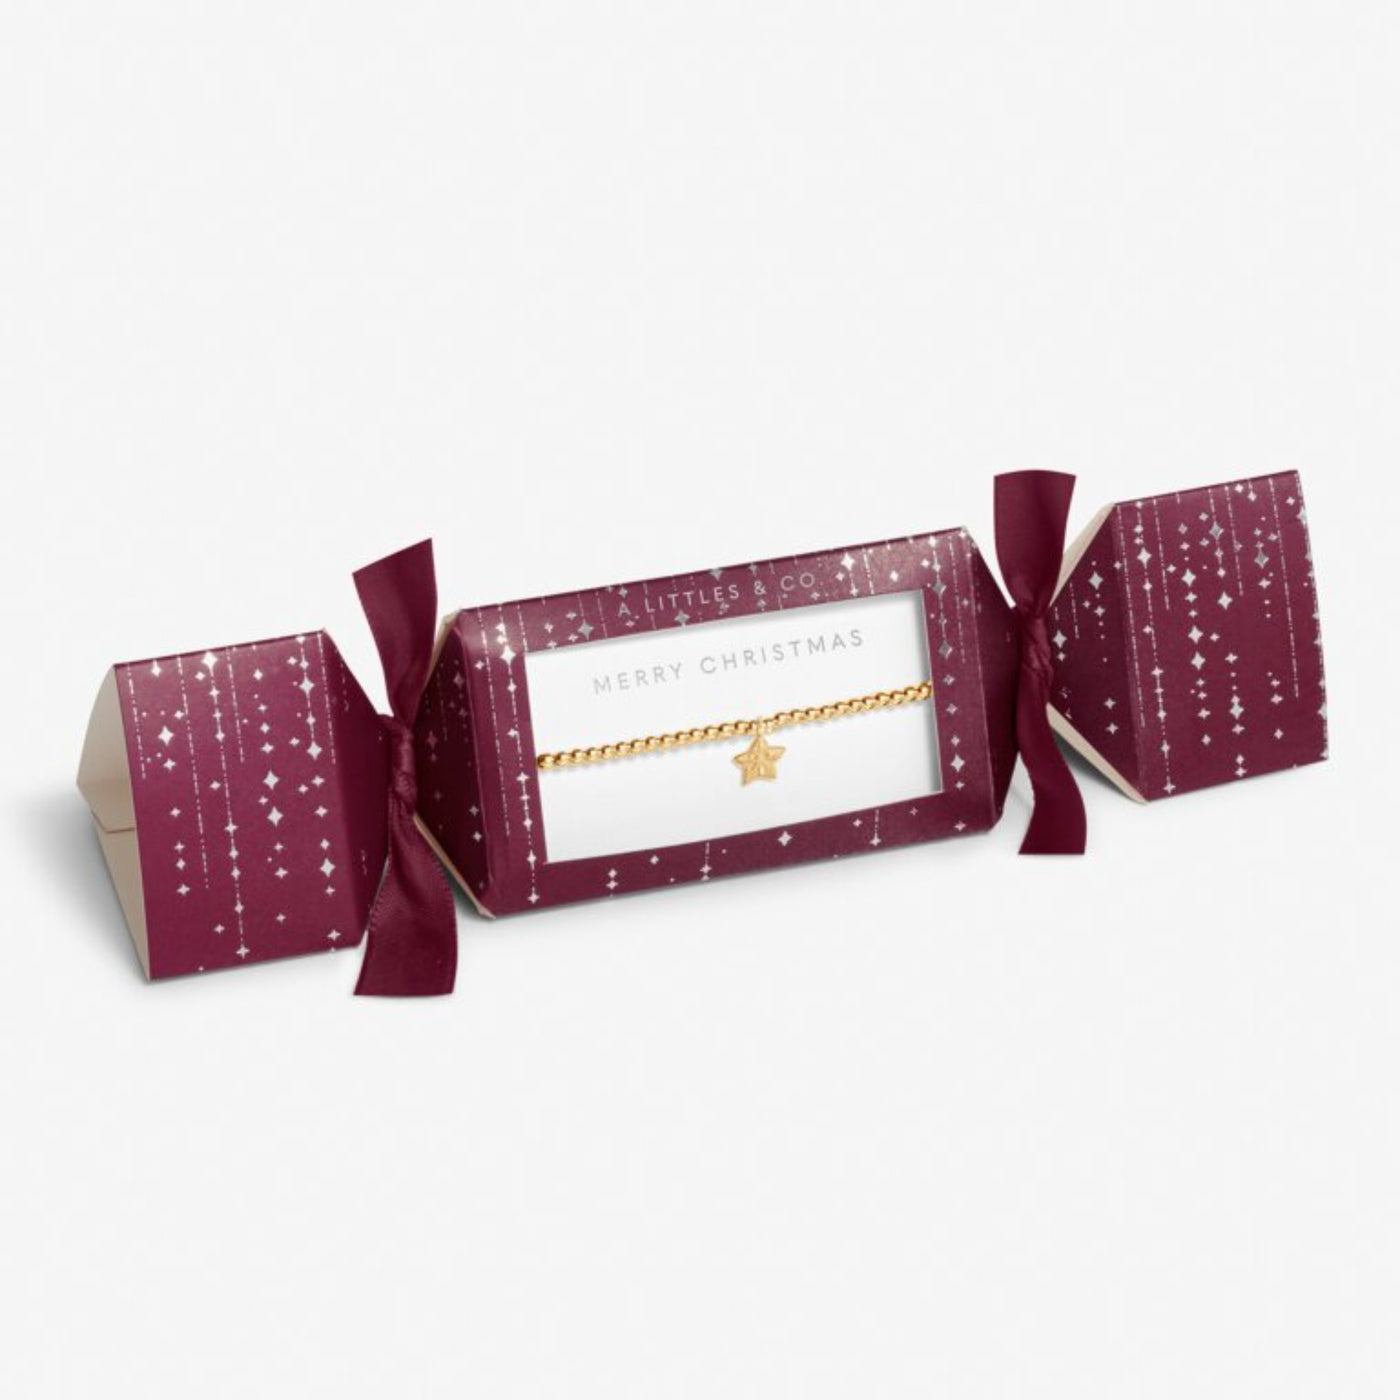 Merry Christmas Star Cracker Box Bracelet